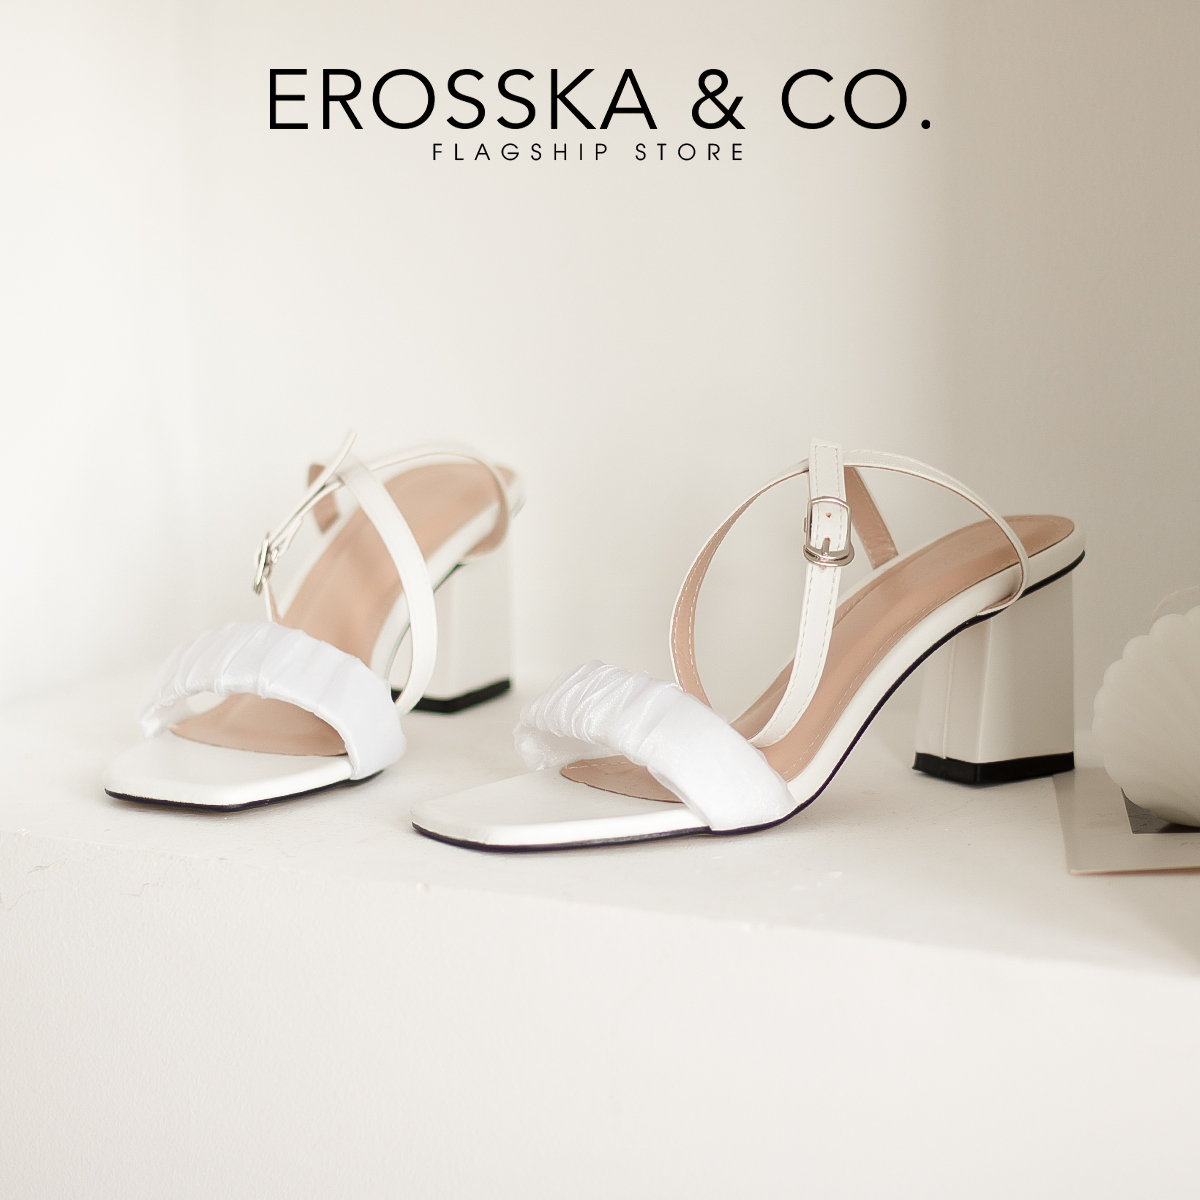 Erosska - Giày sandal cao gót nữ quai nhún phối dây quai mảnh cao 7cm màu trắng - EB050